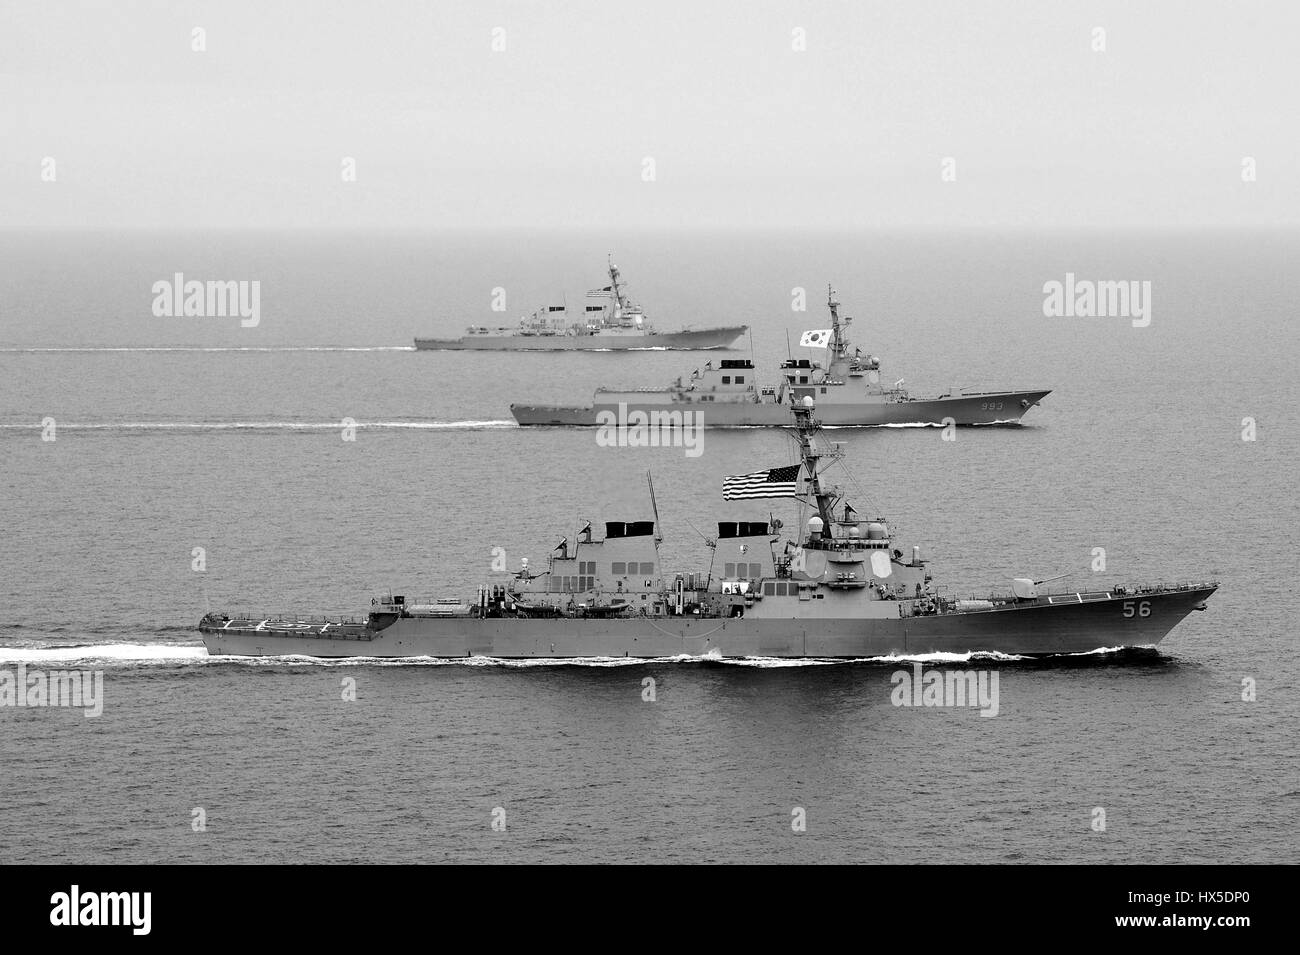 Arleigh Burke-class guidato-missile destroyer USS John S. McCain (DDG 56), Repubblica di Corea Navy Aegis-class destroyer ROKS Seoae-Yu-Seong-Ryong (DDG 993), e Arleigh Burke-class guidato-missile destroyer USS McCampbell (DDG 85) partecipano a esercitare il puledro Eagle 2013, a ovest della penisola coreana, 2013. Immagine cortesia Declan Barnes/US Navy. Foto Stock